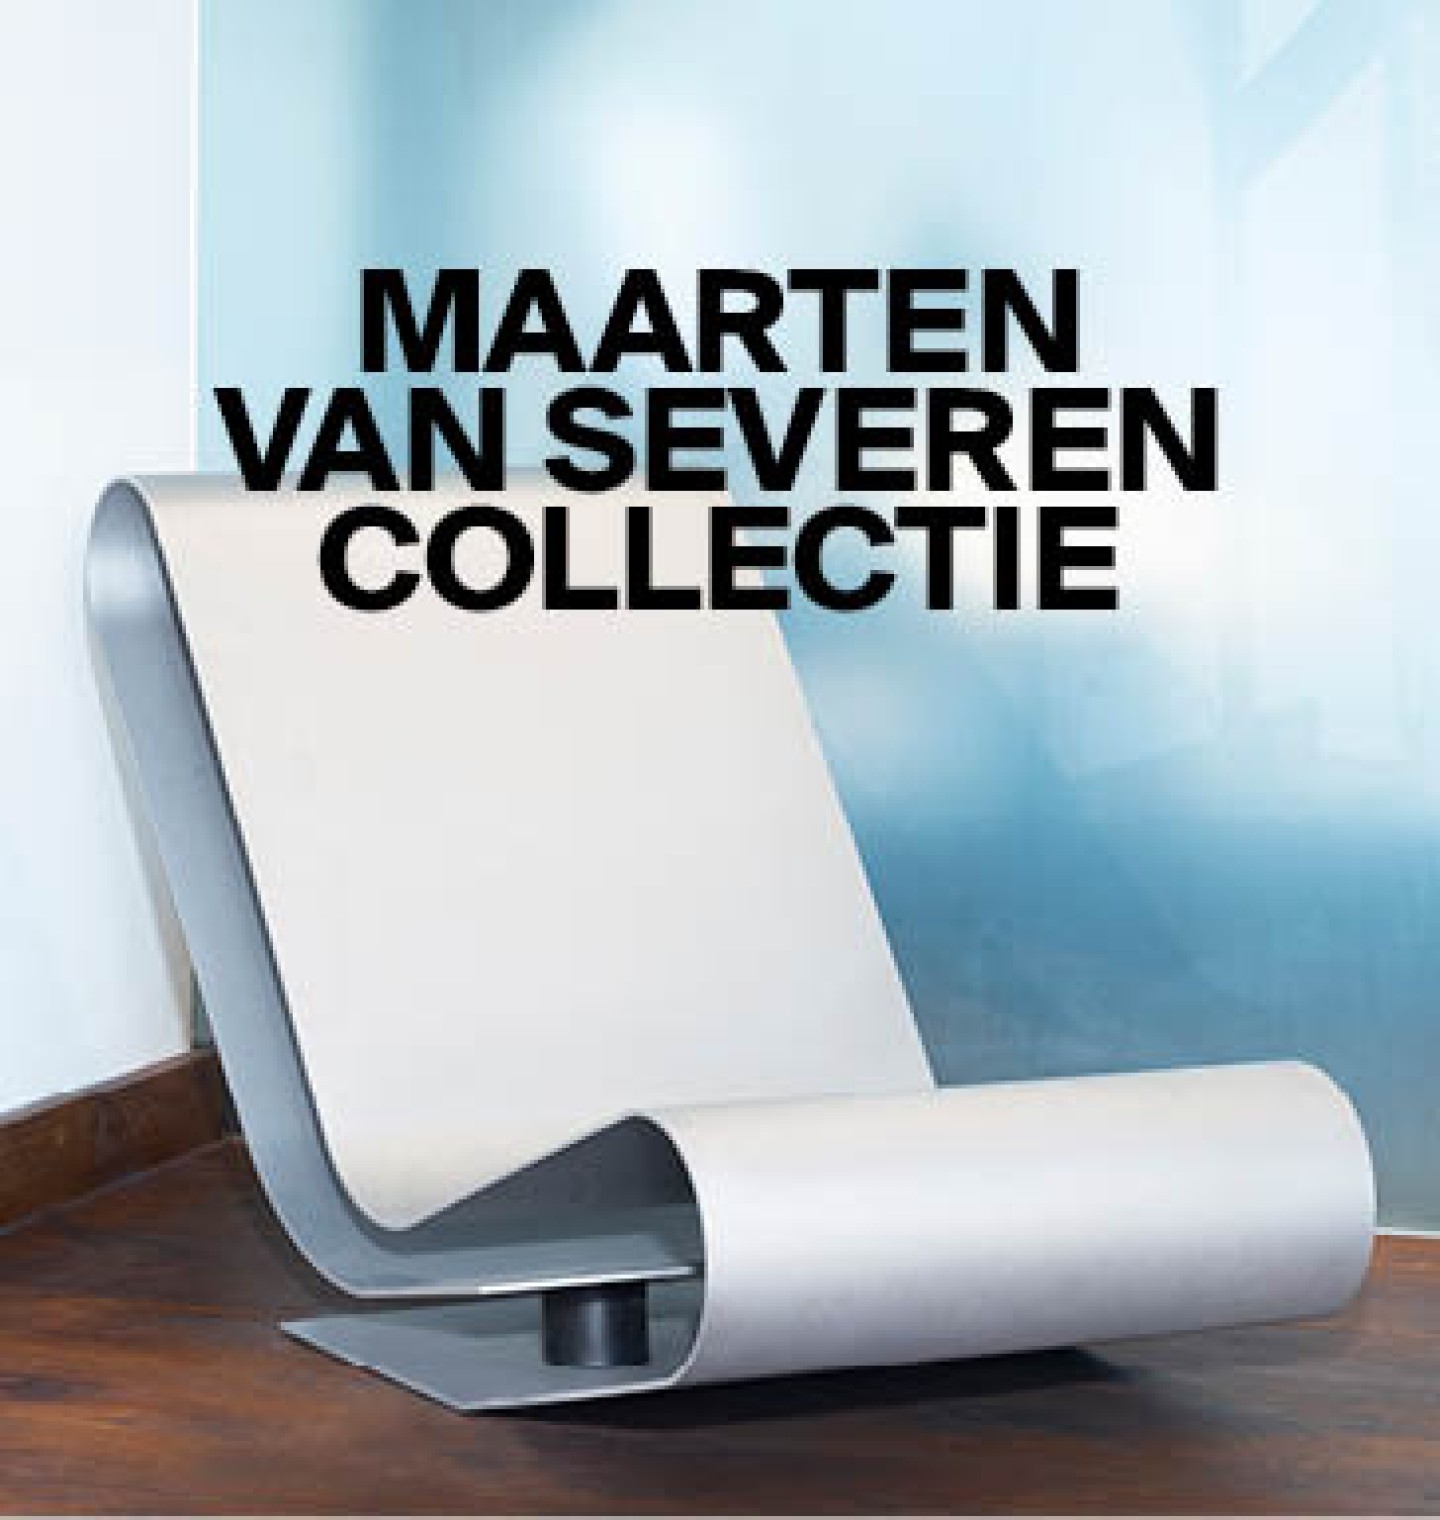 Click here_ for the Maarten Van Severen Collection